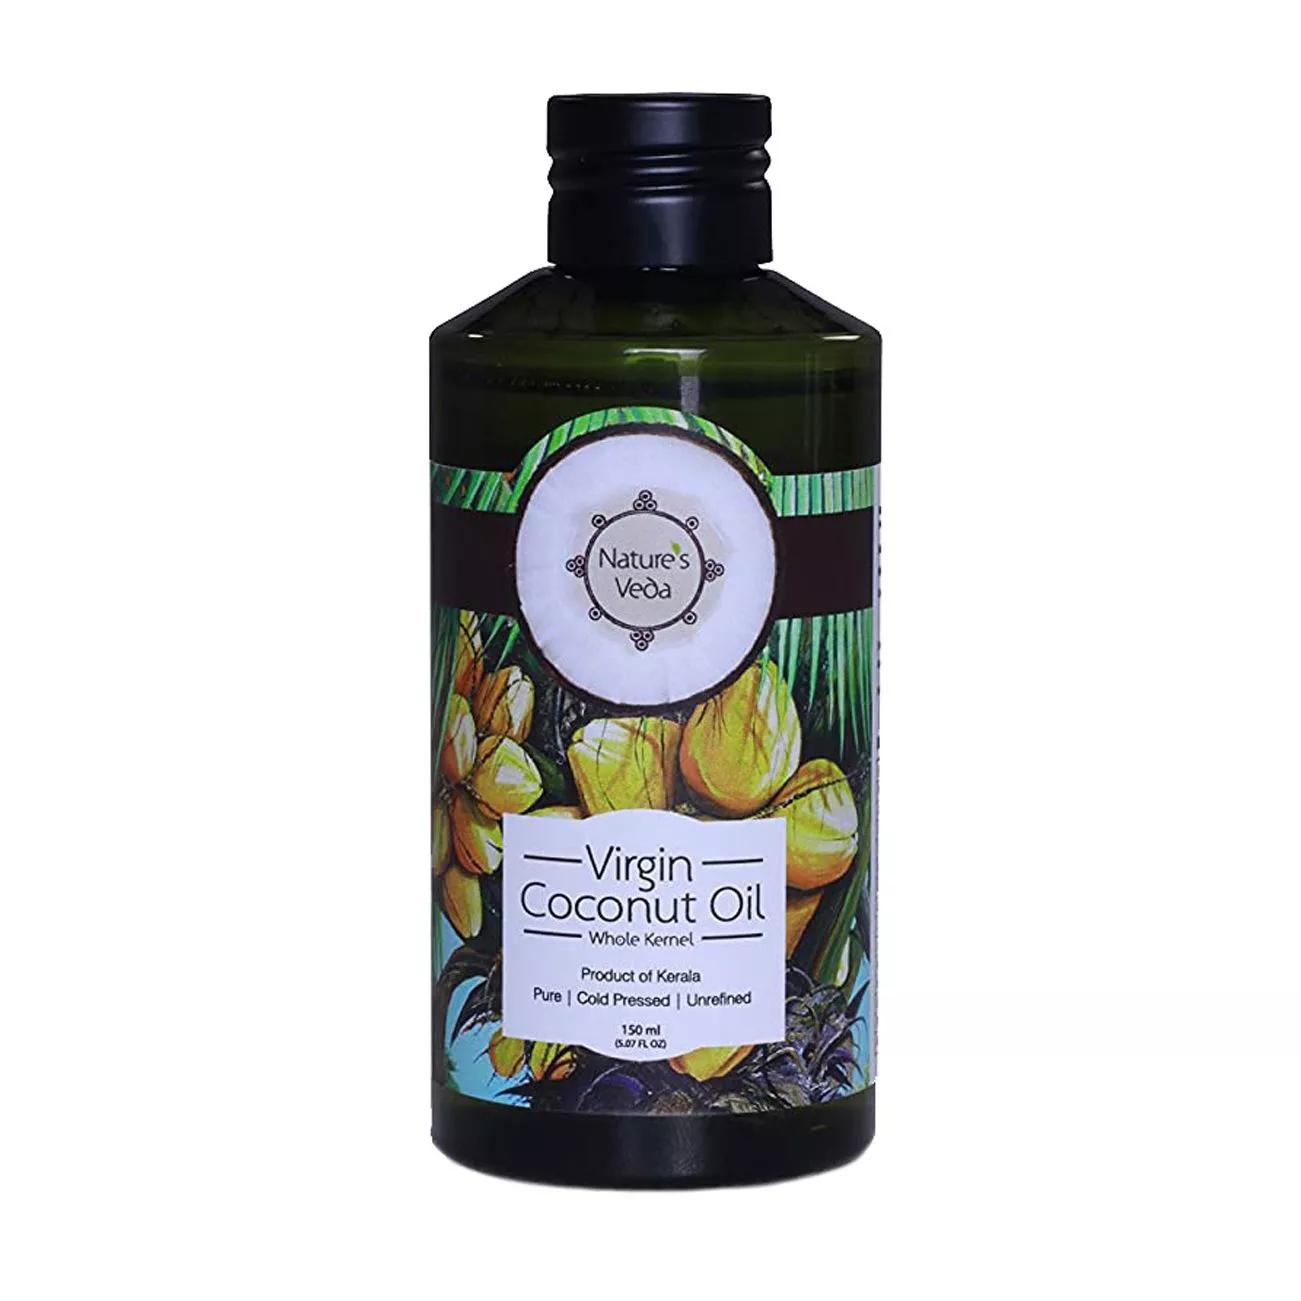 Aceite de coco prensado en frío: para el cuidado del cuerpo y el cabello (200 ml), Aceite de coco virgen prensado en frío Nature's Veda